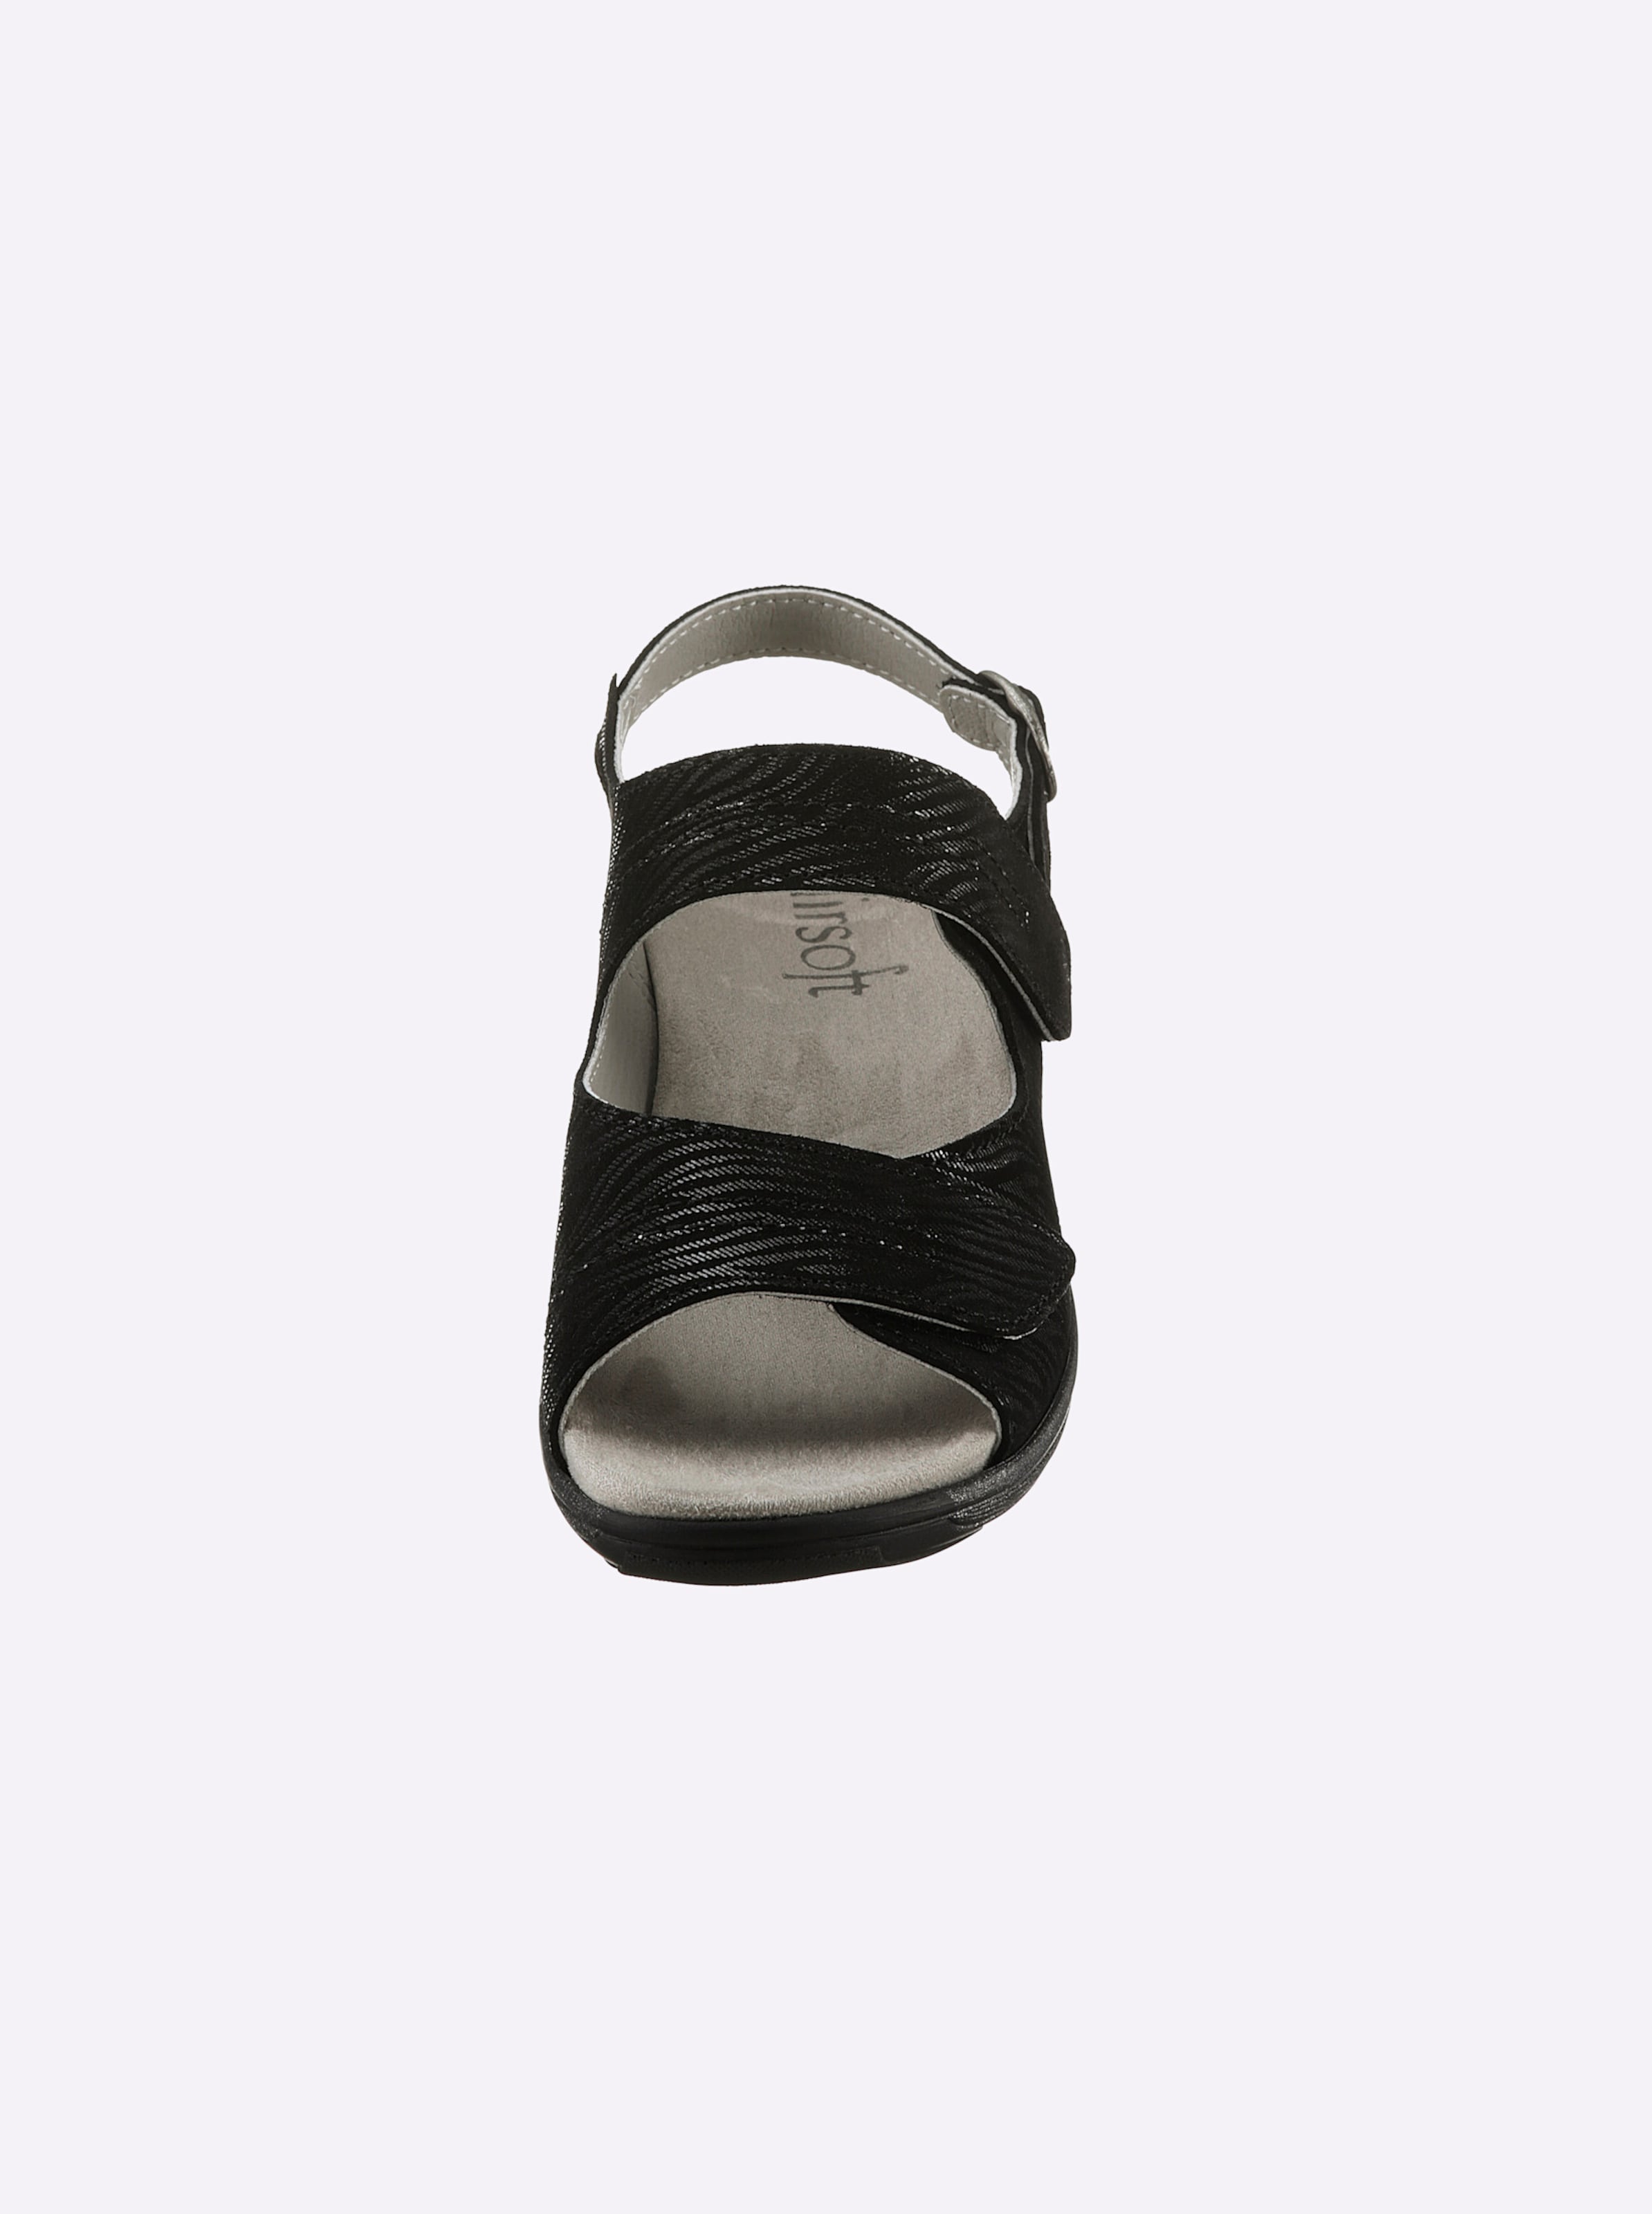 Und noch günstig Kaufen-Sandalette in schwarz von airsoft comfort+. Sandalette in schwarz von airsoft comfort+ <![CDATA[Ganz im Trend und auch noch super bequem! Sandalette von airsoft comfort+ mit geprägtem, edel schimmerndem Zebra-Muster auf hochwertigem Glattleder. Innen aus